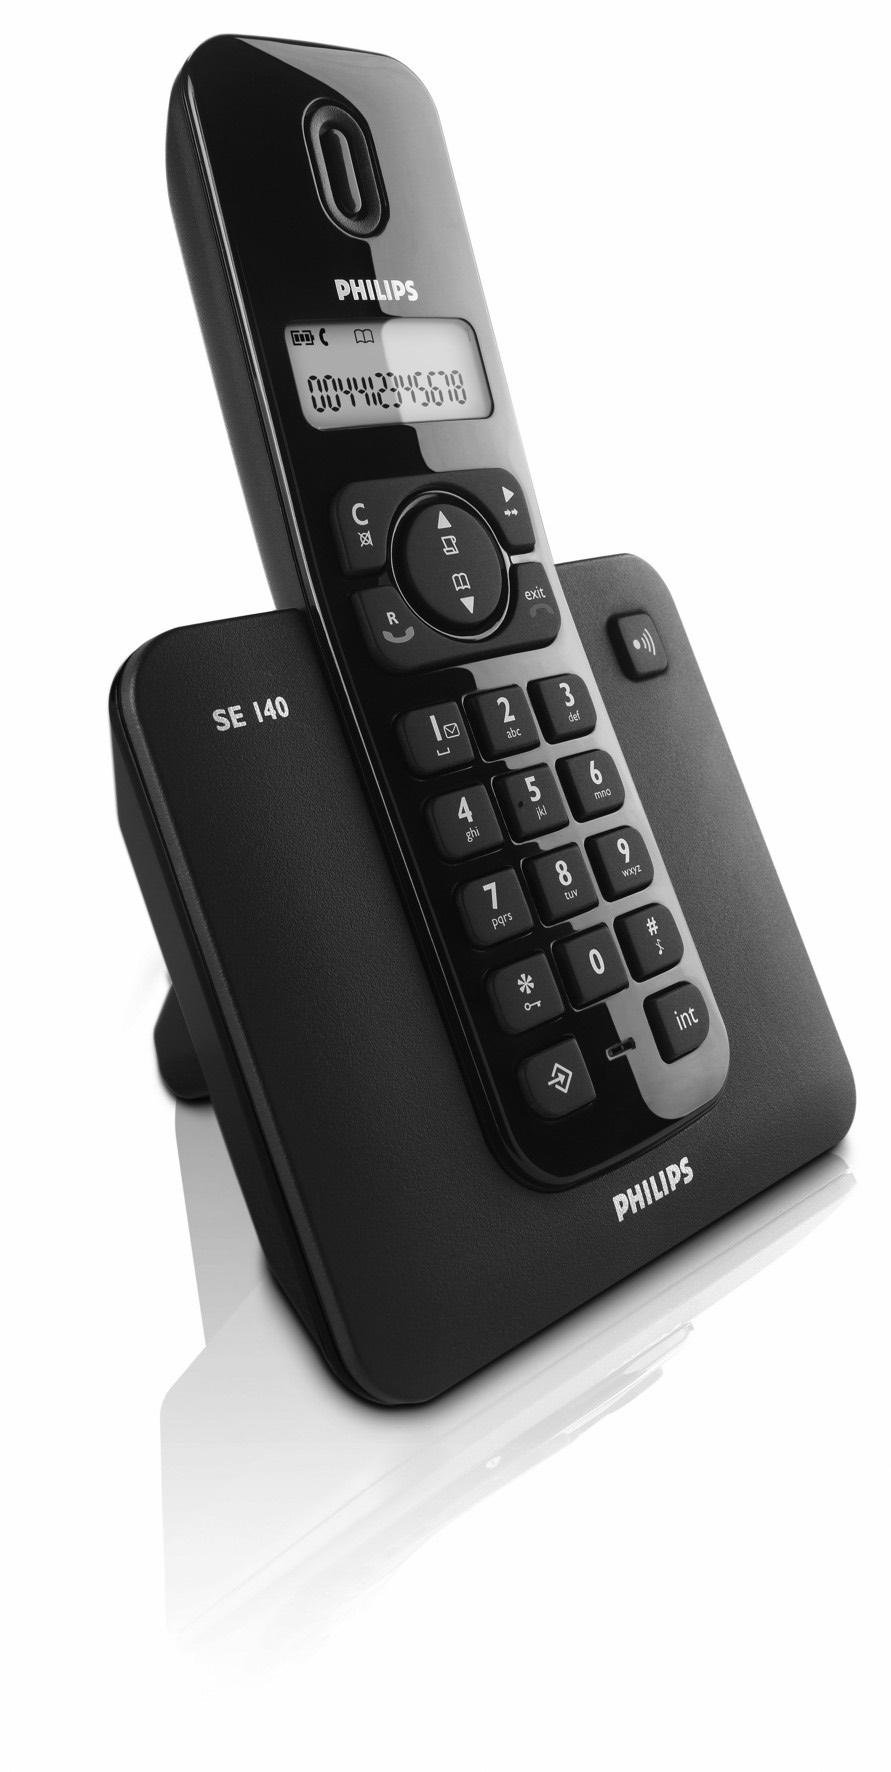 Ψηφιακό ασύρματο τηλέφωνο SE 140 Ψηφιακό ασύρματο τηλέφωνο με αυτόματο τηλεφωνητή